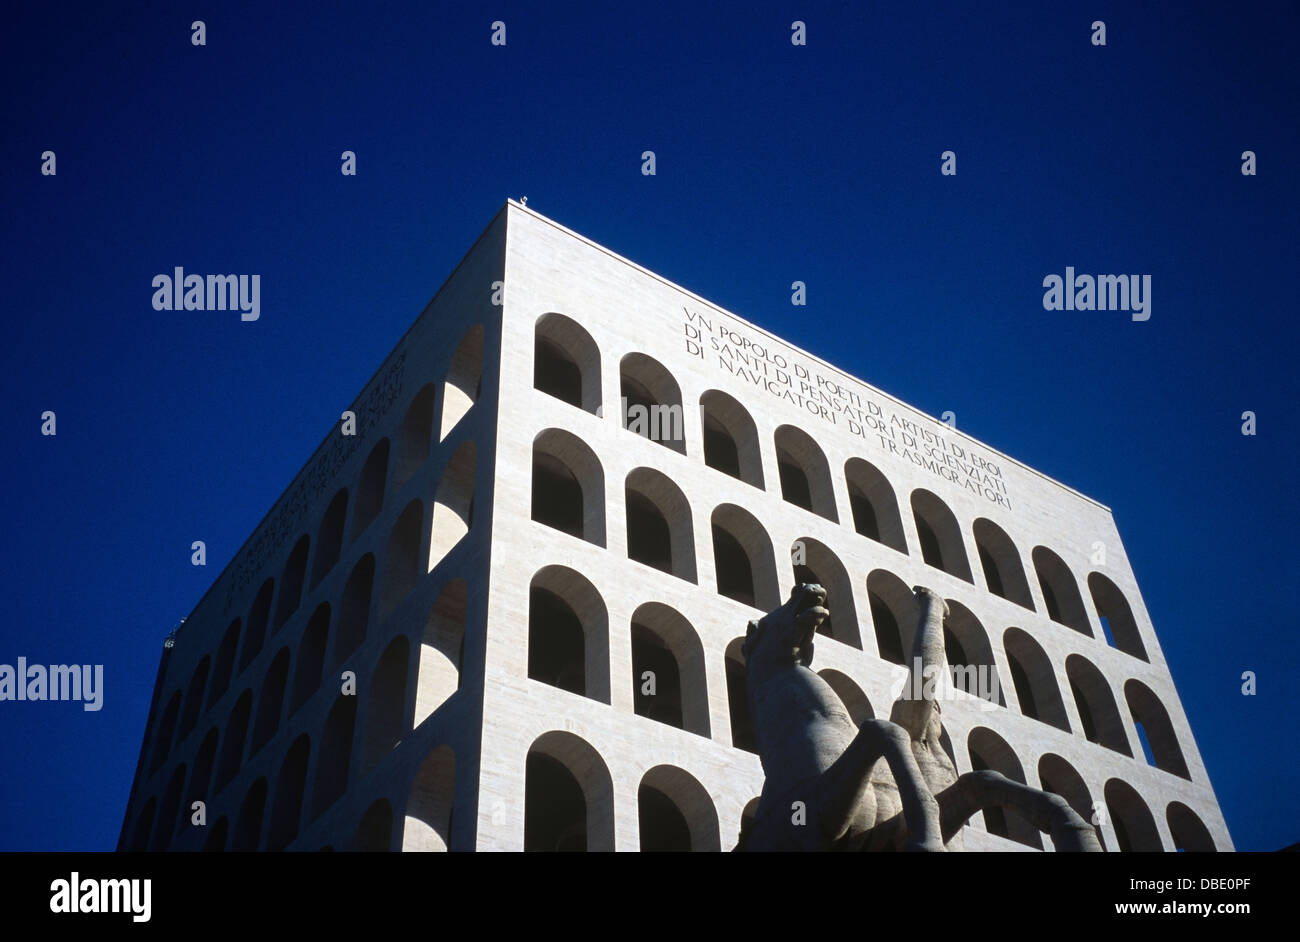 The Palazzo della Civiltà del Lavoro is a building in Rome symbol of Italian Fascist architecture. Stock Photo